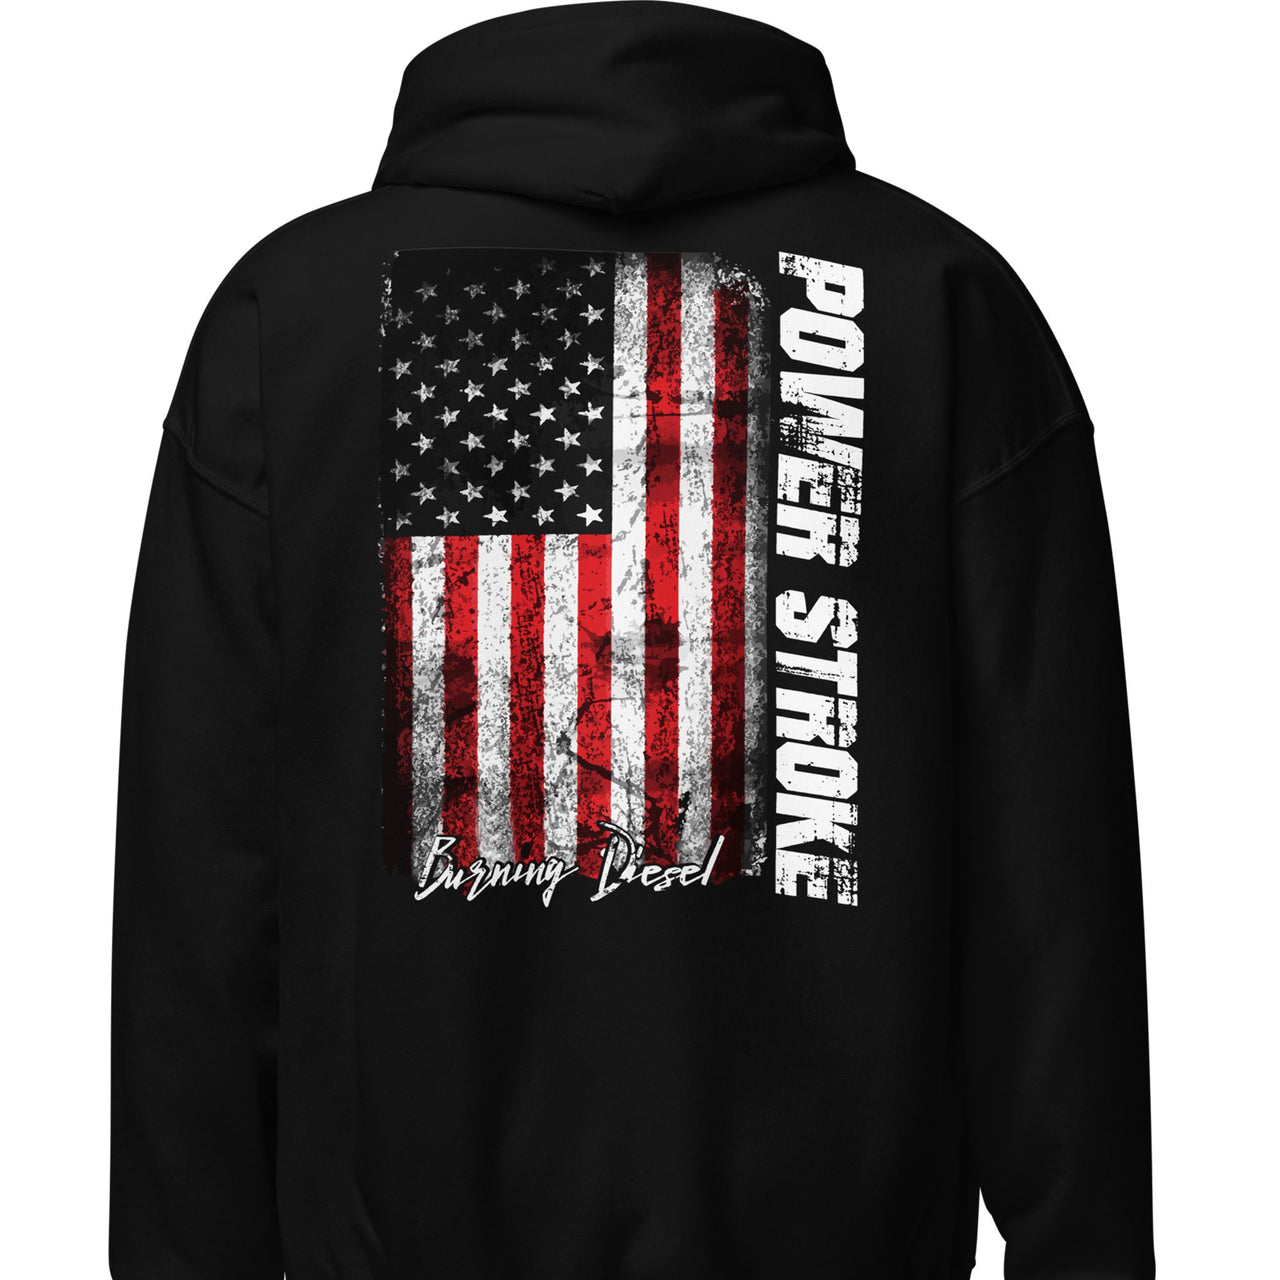 7.3 Power Stroke Diesel Hoodie, American Flag Sweatshirt back in black